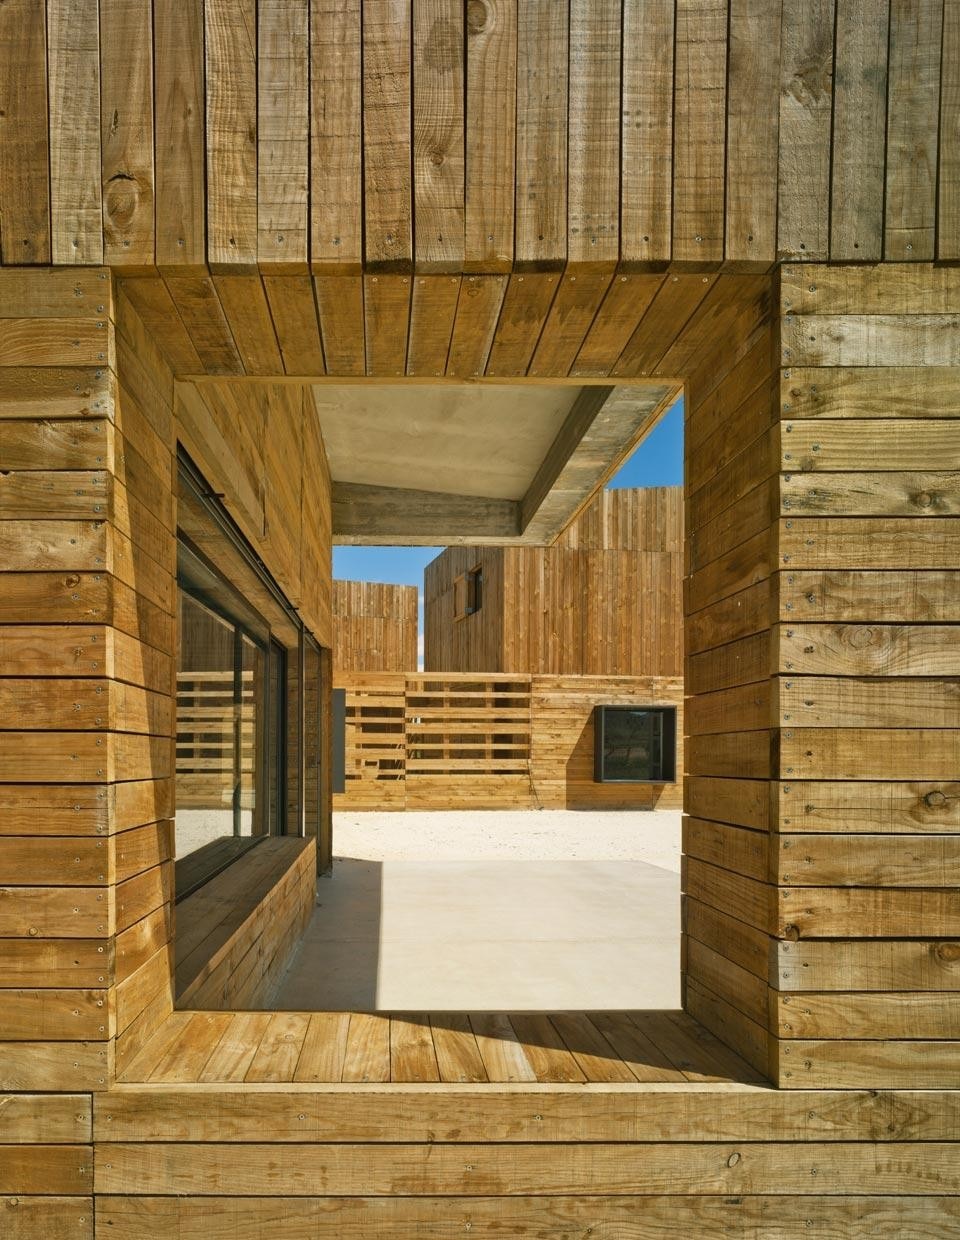 Blancafort-Reus arquitectura, <em>Casa para tres hermanas</em> ["House for three sisters"], Murcia, Spain 2011